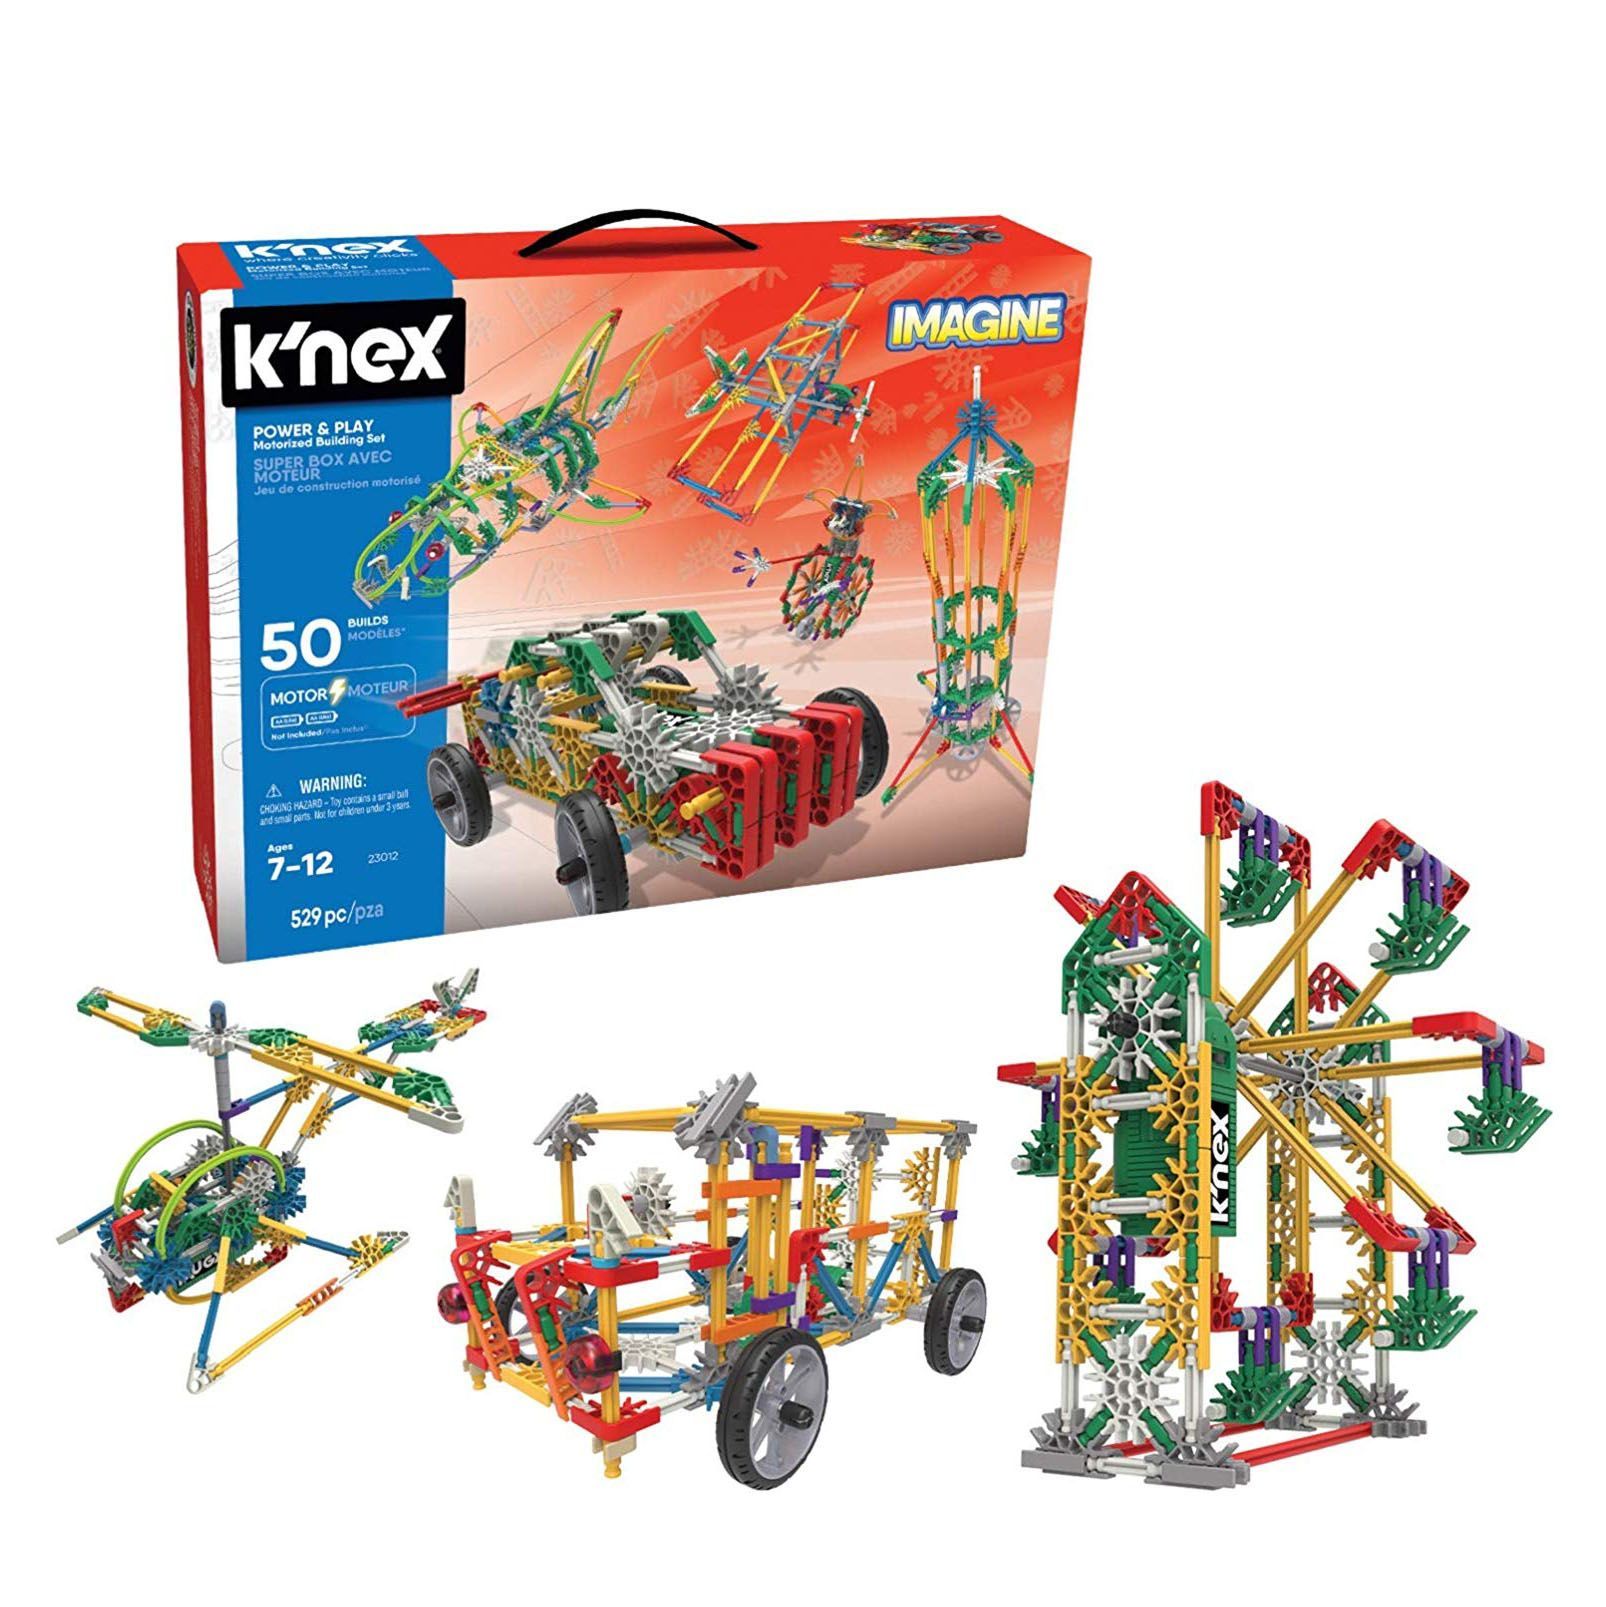 metal toys like knex